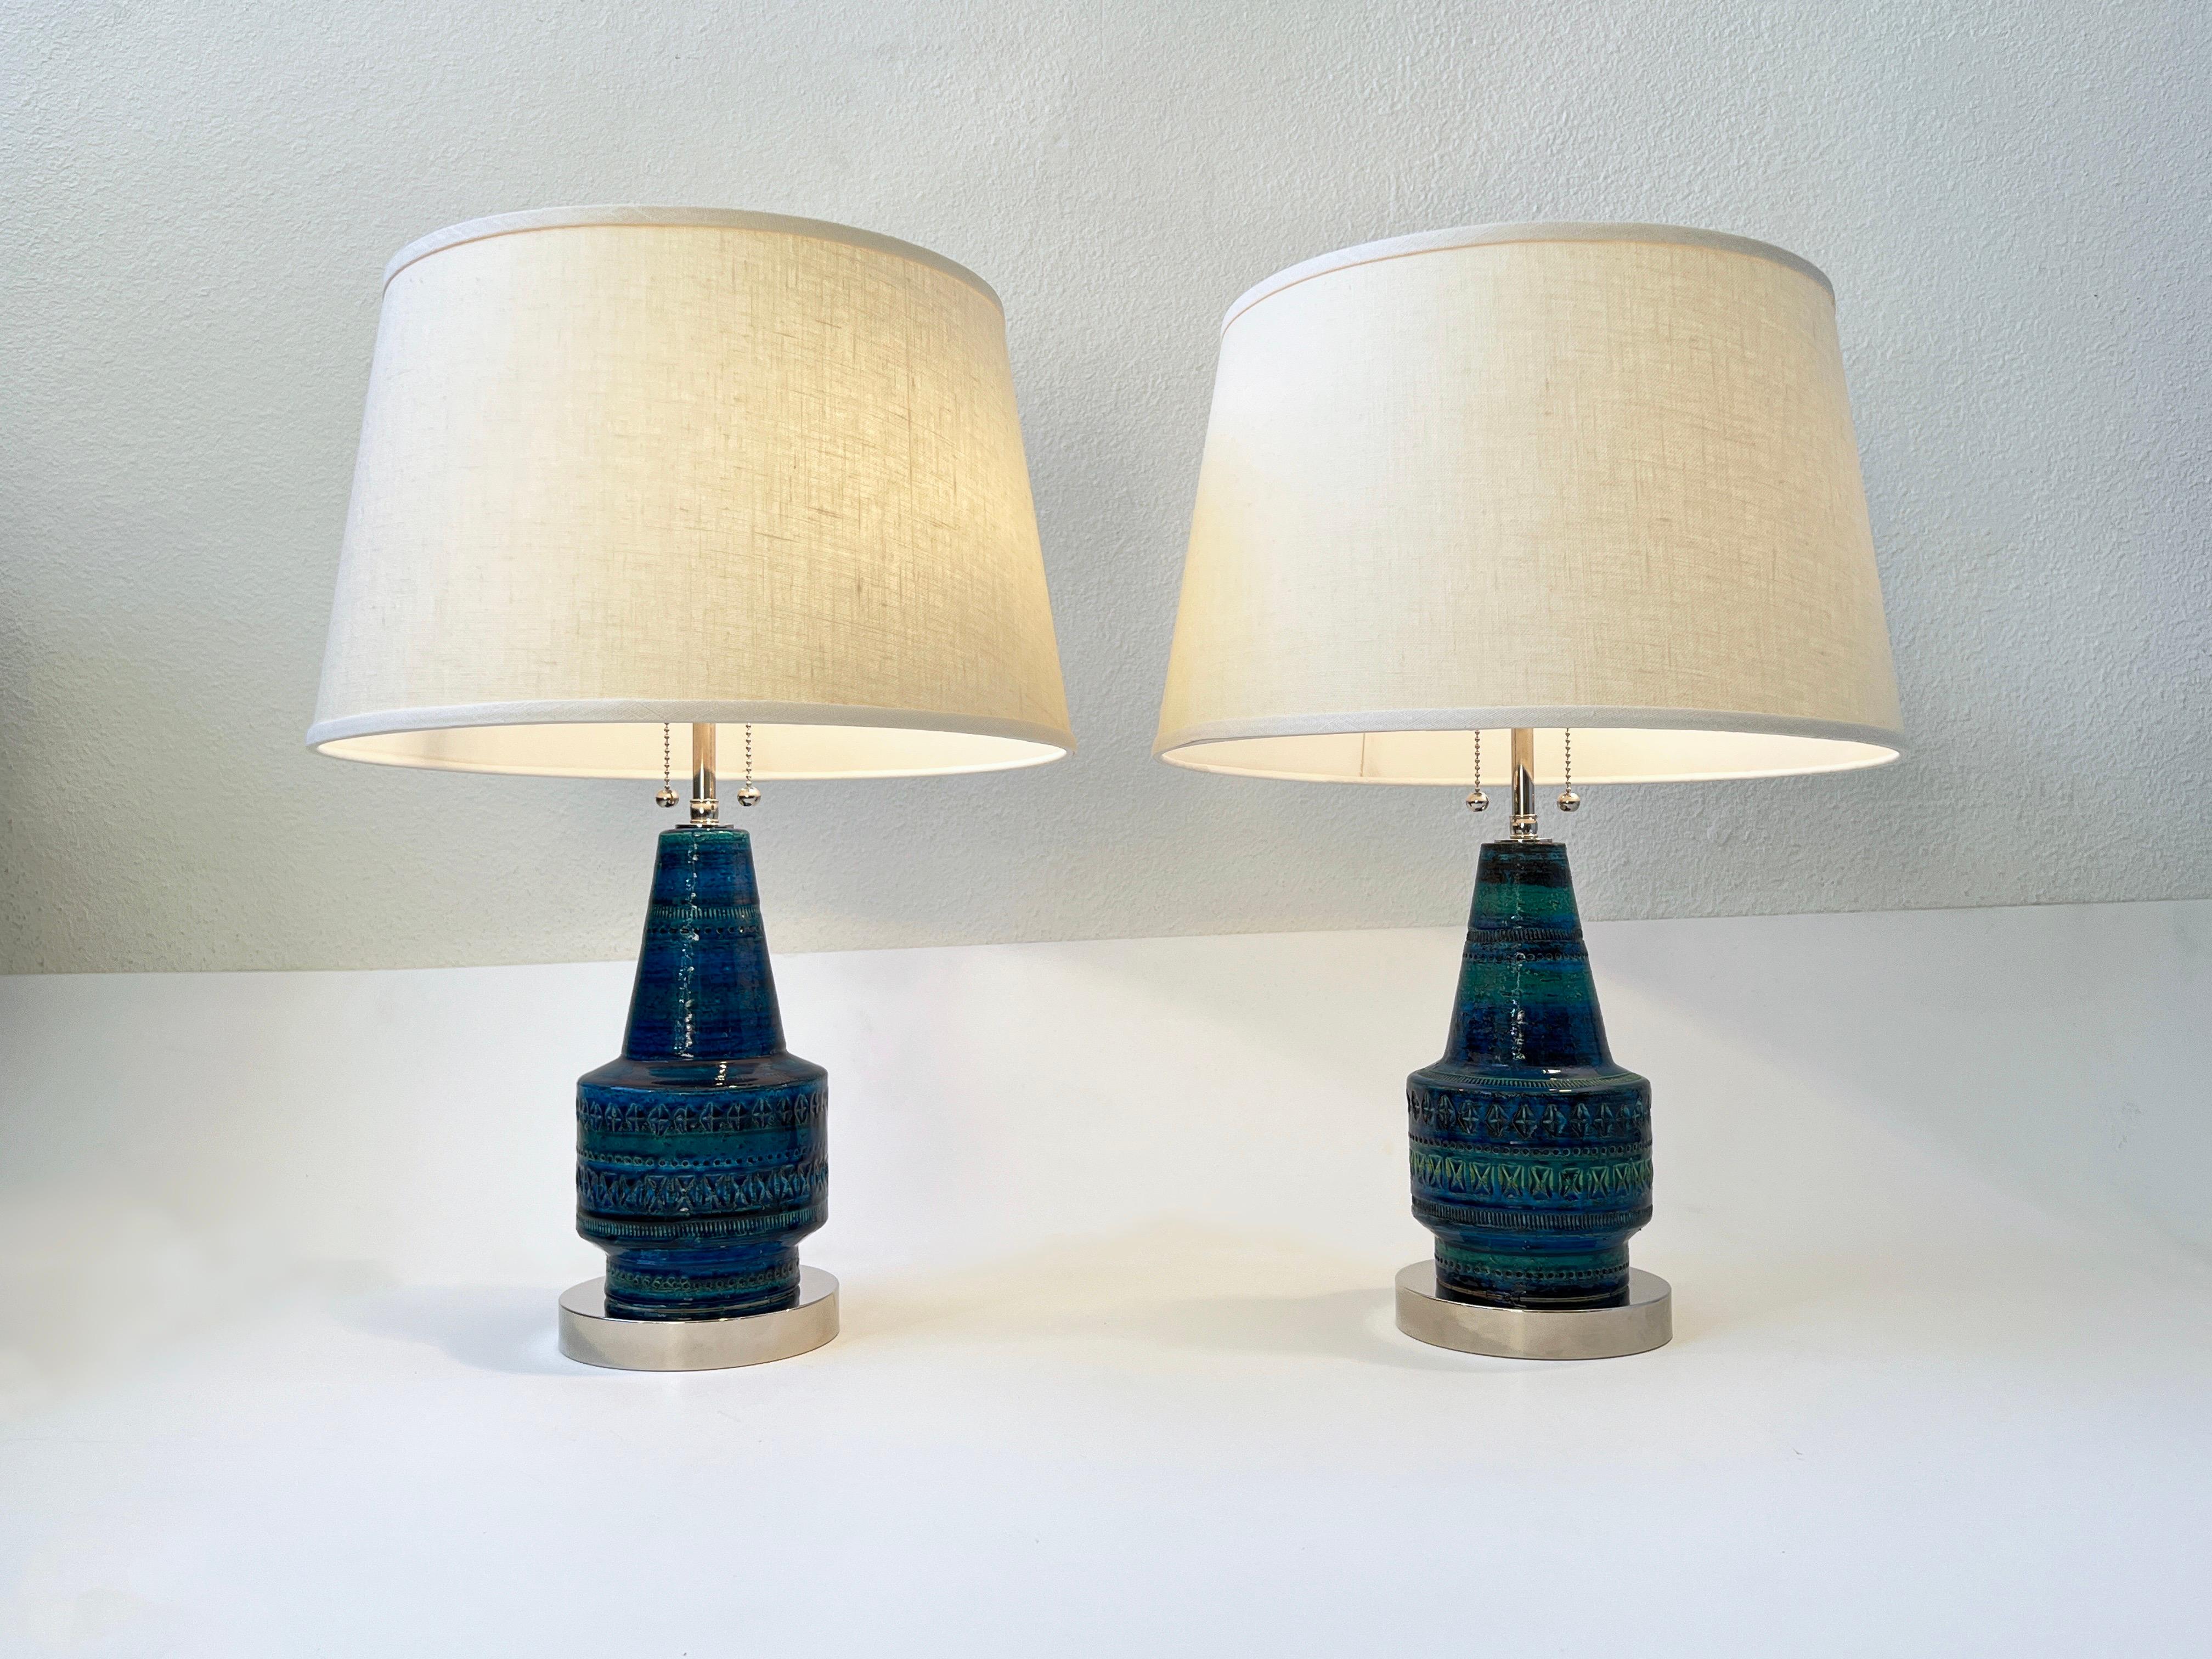 Zwei italienische Keramiklampen 'Rimini Blue', entworfen in den 1960er Jahren von Aldo Londi für Bitossi.
Neu verkabelt, mit neuen Chrombeschlägen und neuen Vanille-Leinenschirmen.
Jede Lampe nimmt zwei kleine 75W max Edison Glühbirnen auf.
Maße: